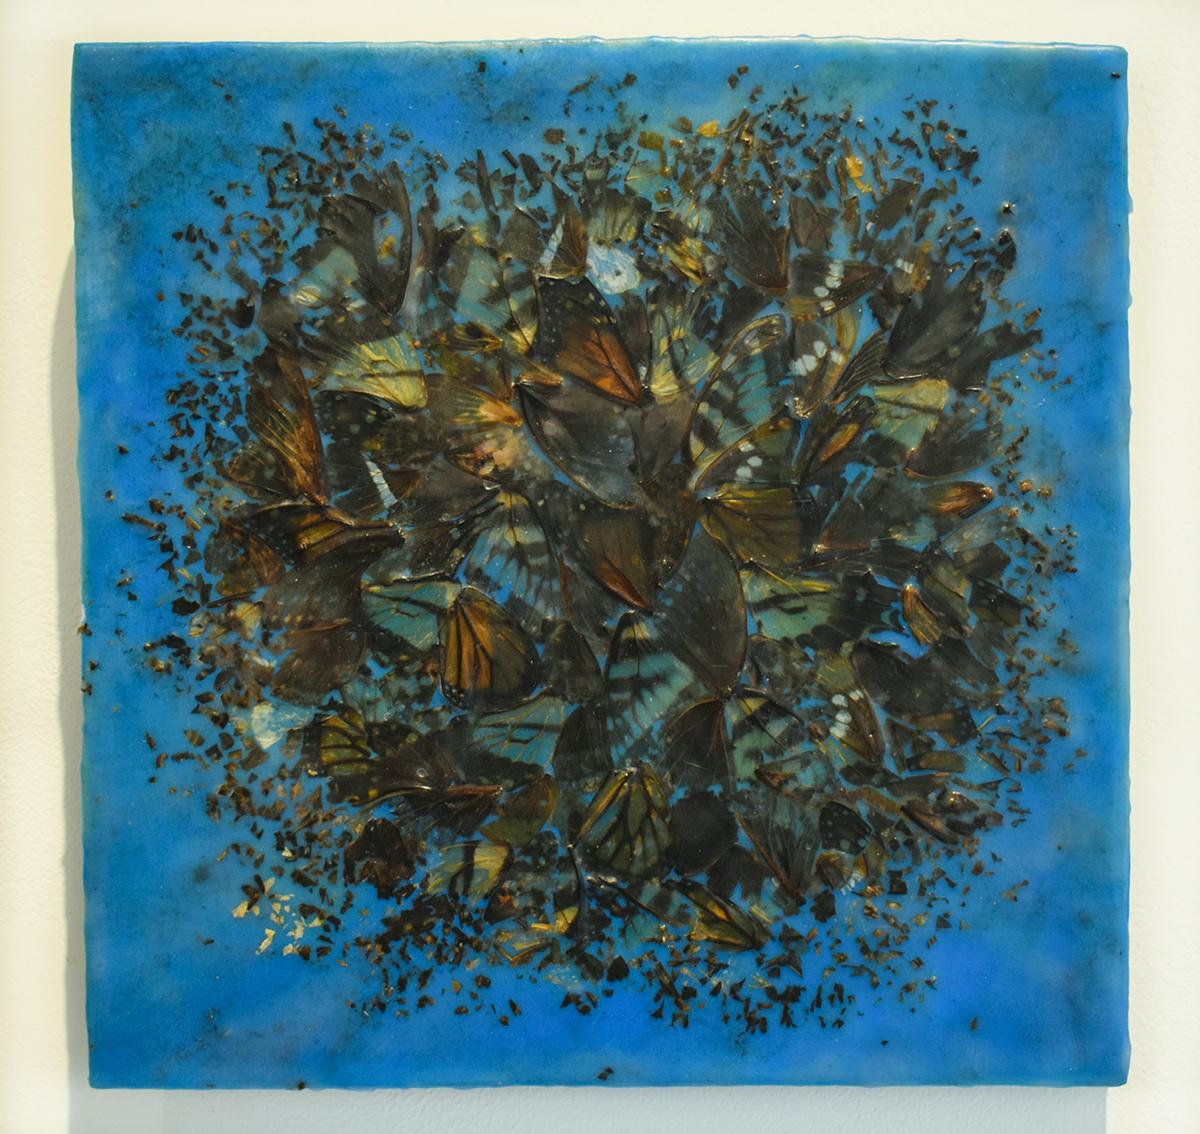 Blaues abstraktes Motiv von Schmetterlingsflügeln und Enkaustik auf Täfelung (Cacophony 2) – Painting von Allyson Levy